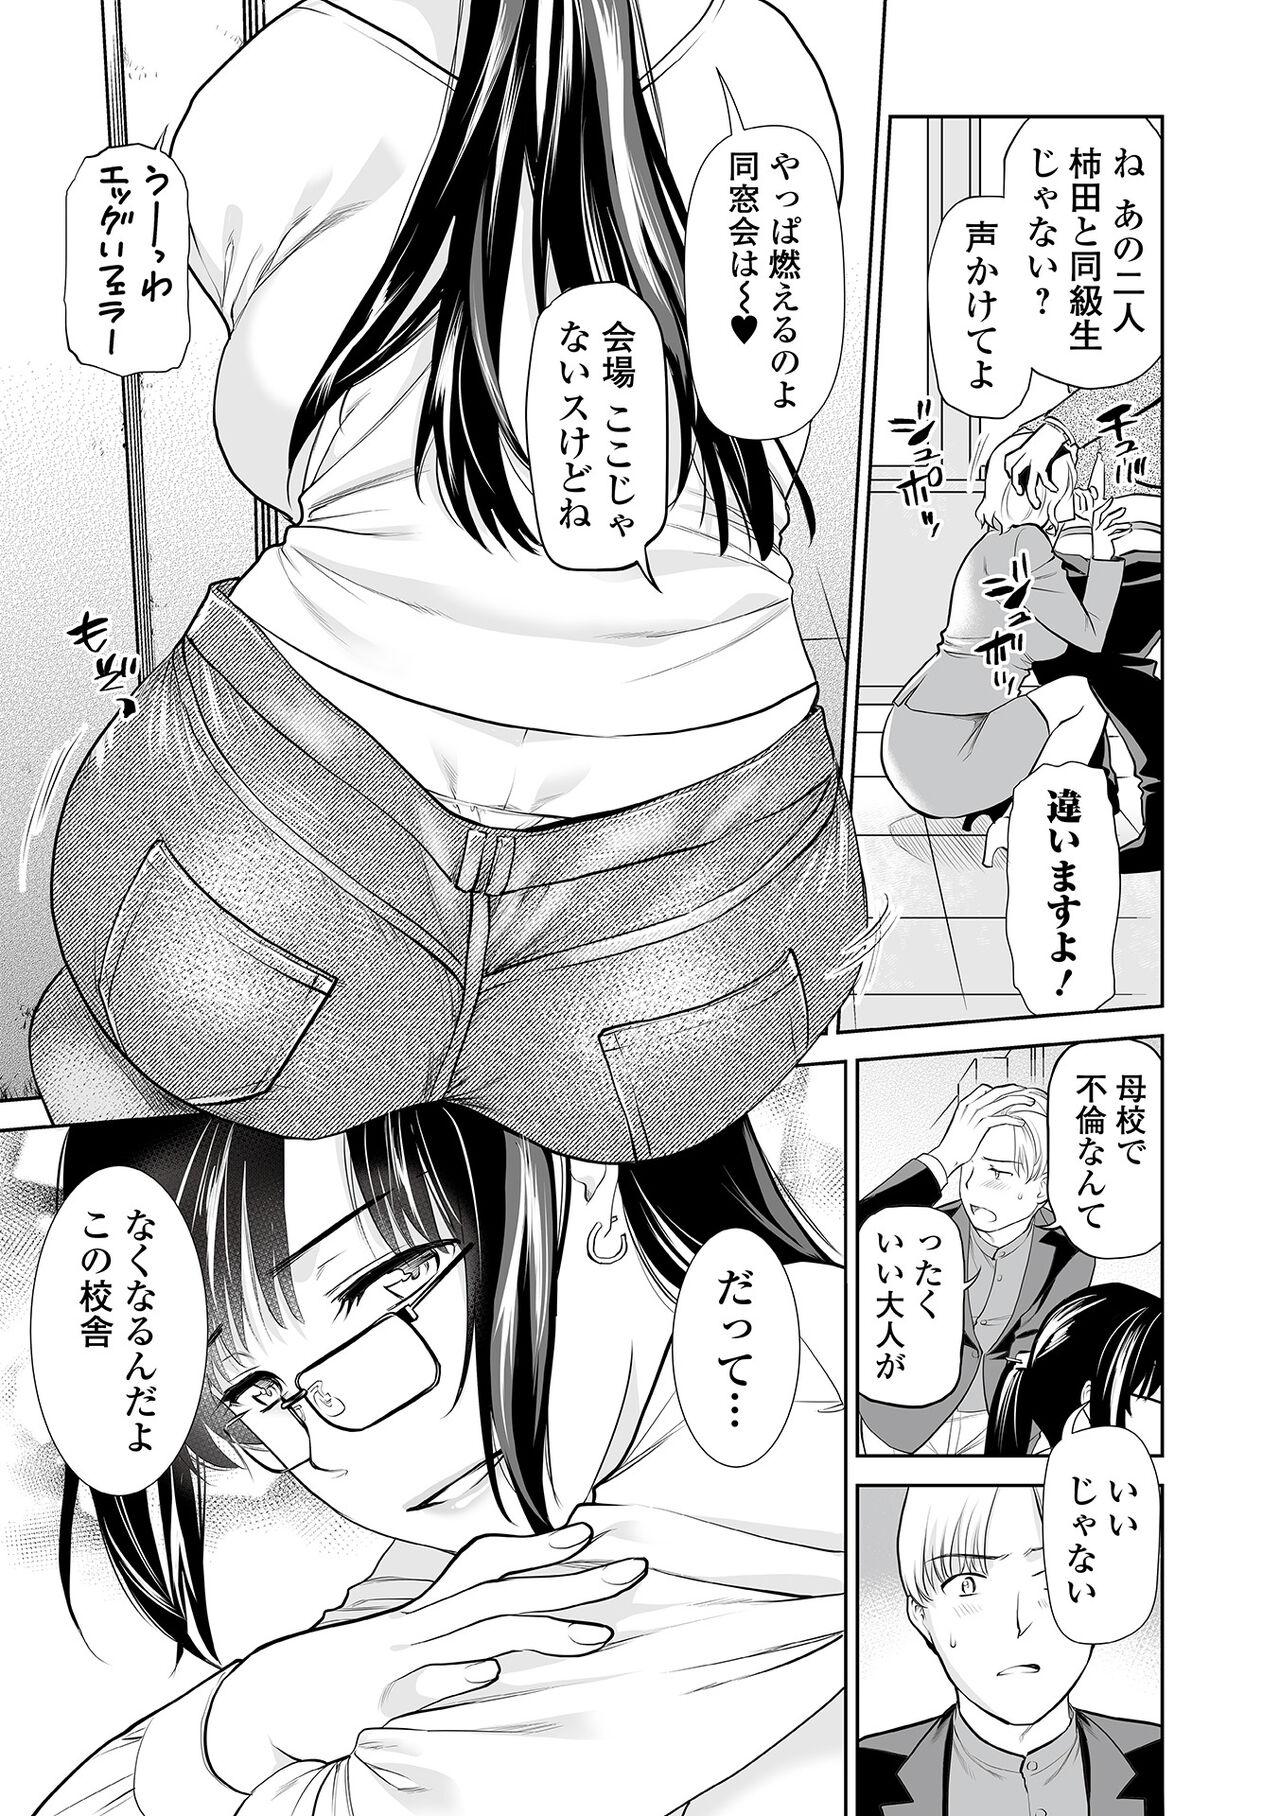 Twistys Web Comic Toutetsu Vol. 87 Couple Sex - Page 5